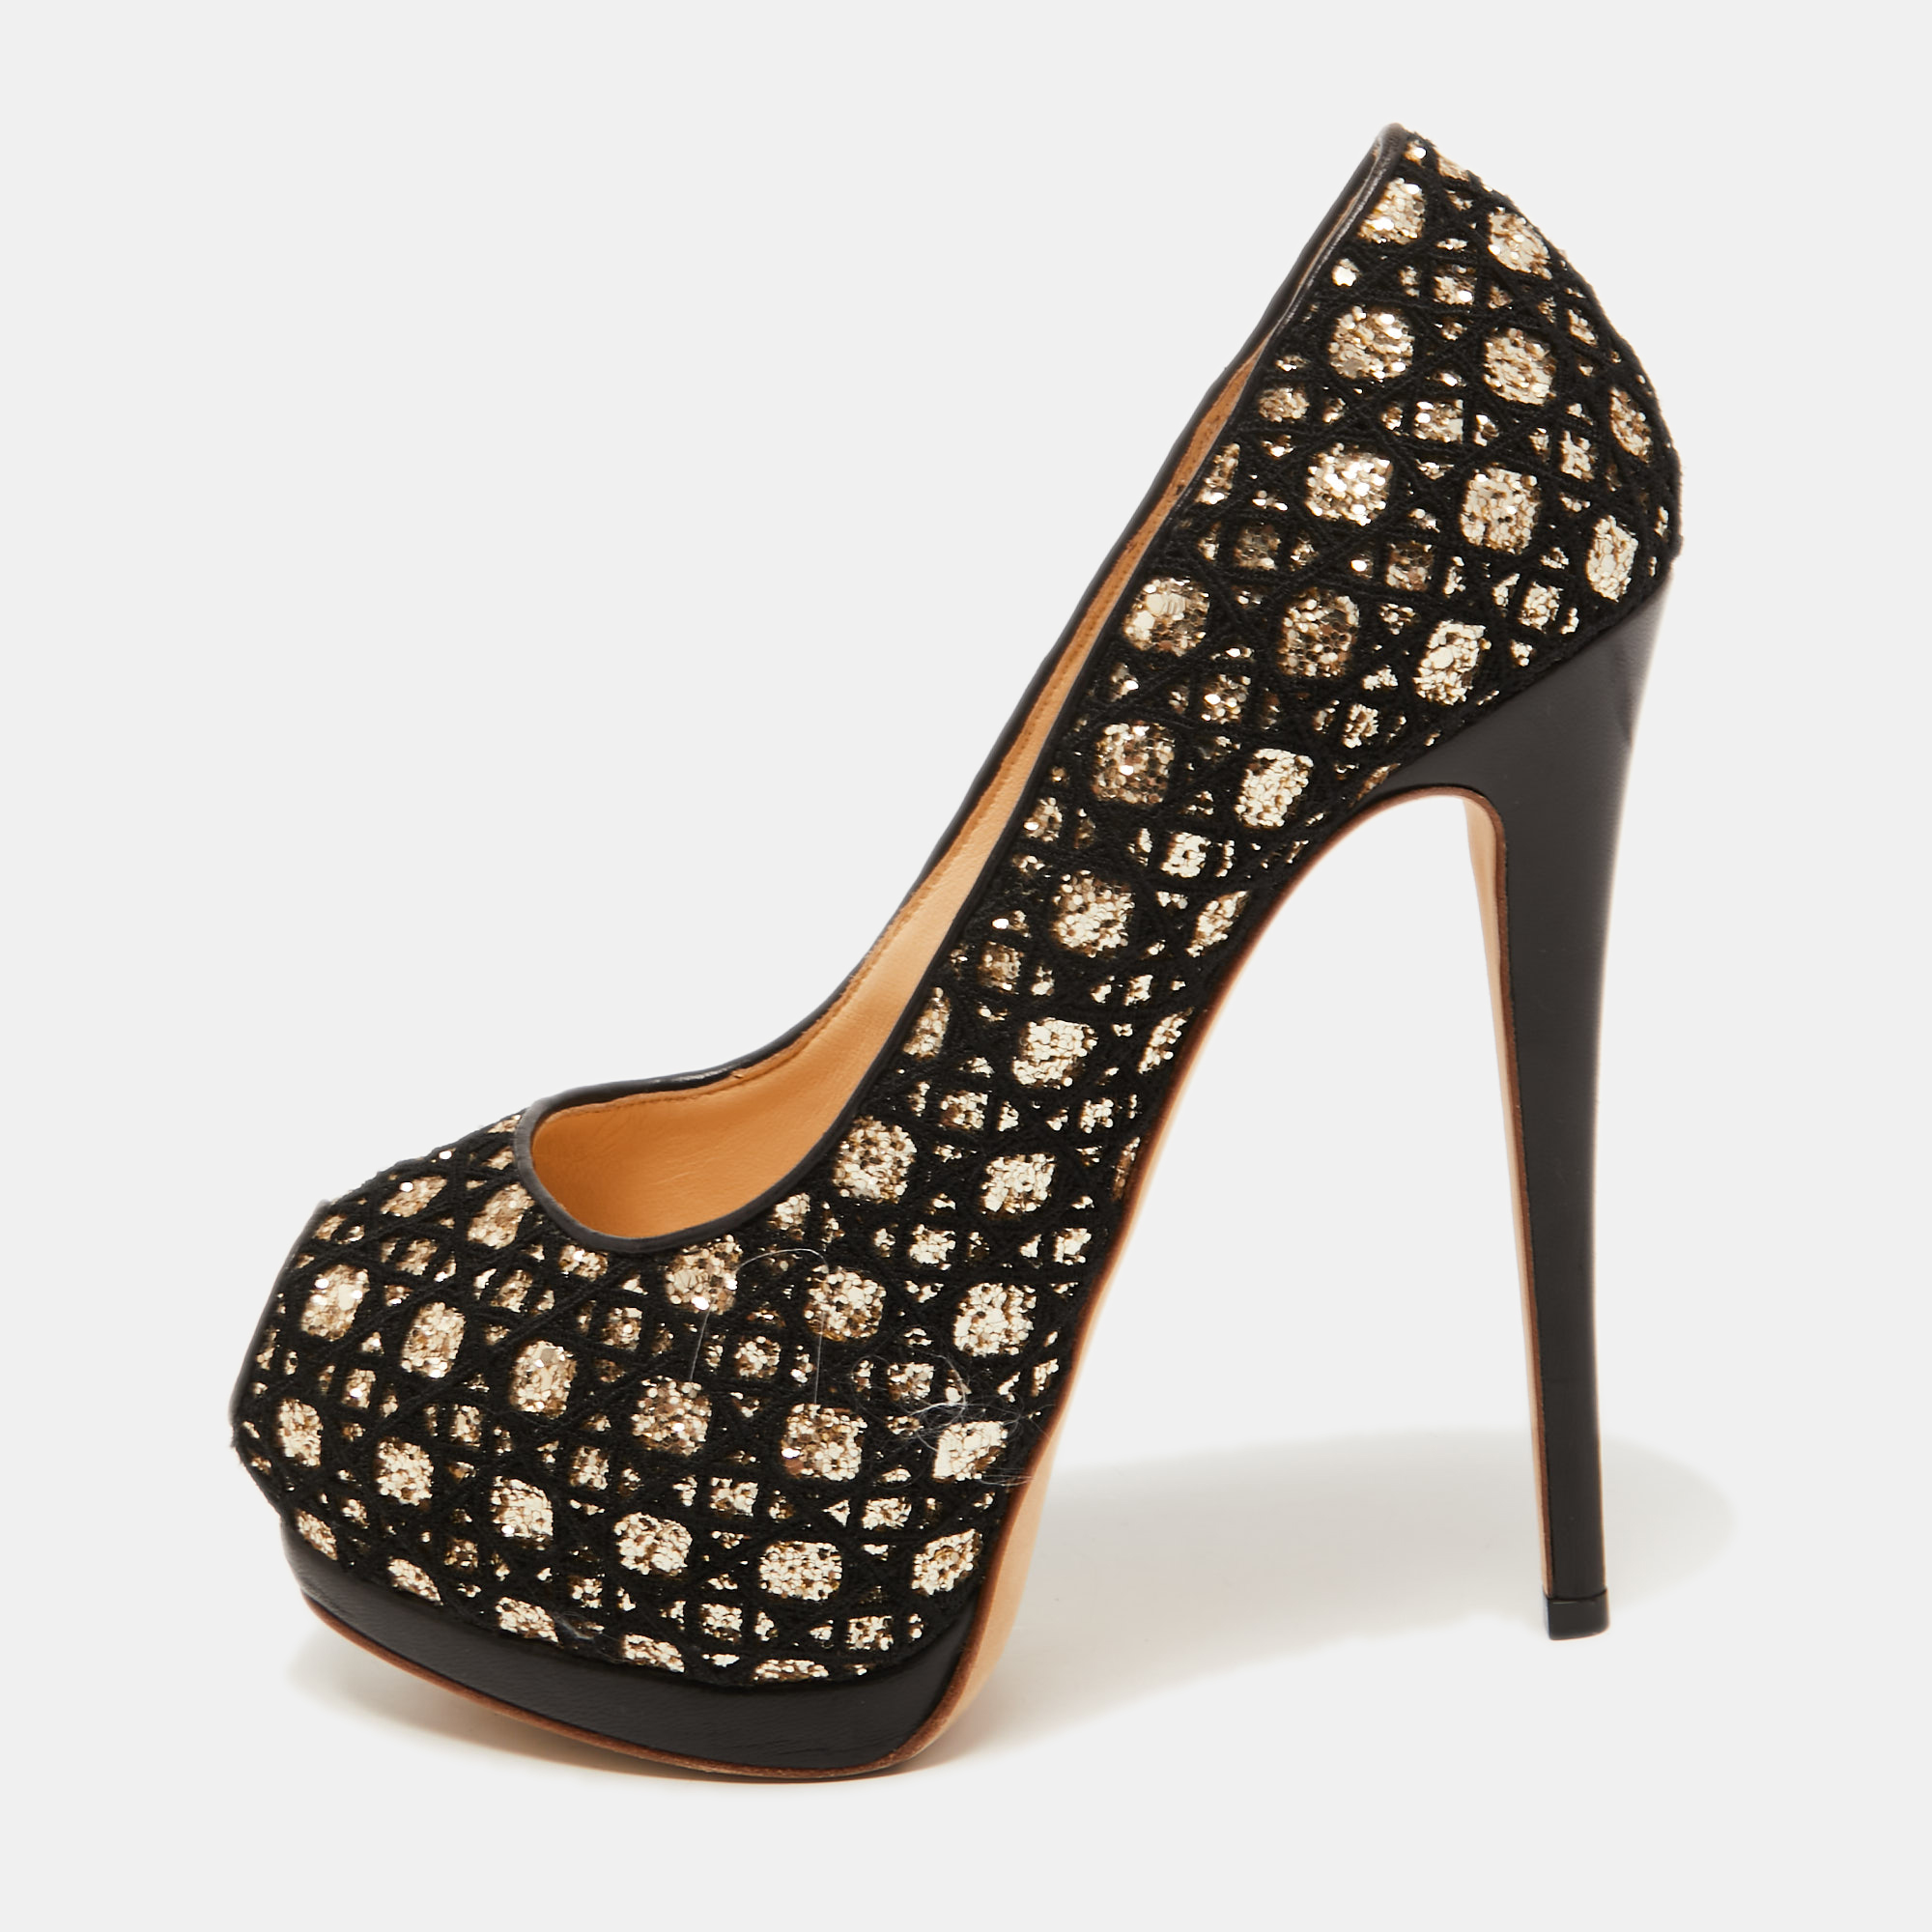 Giuseppe Zanotti Black/Gold Lace And Glitter Sharon Peep Toe Pumps Size 38.5